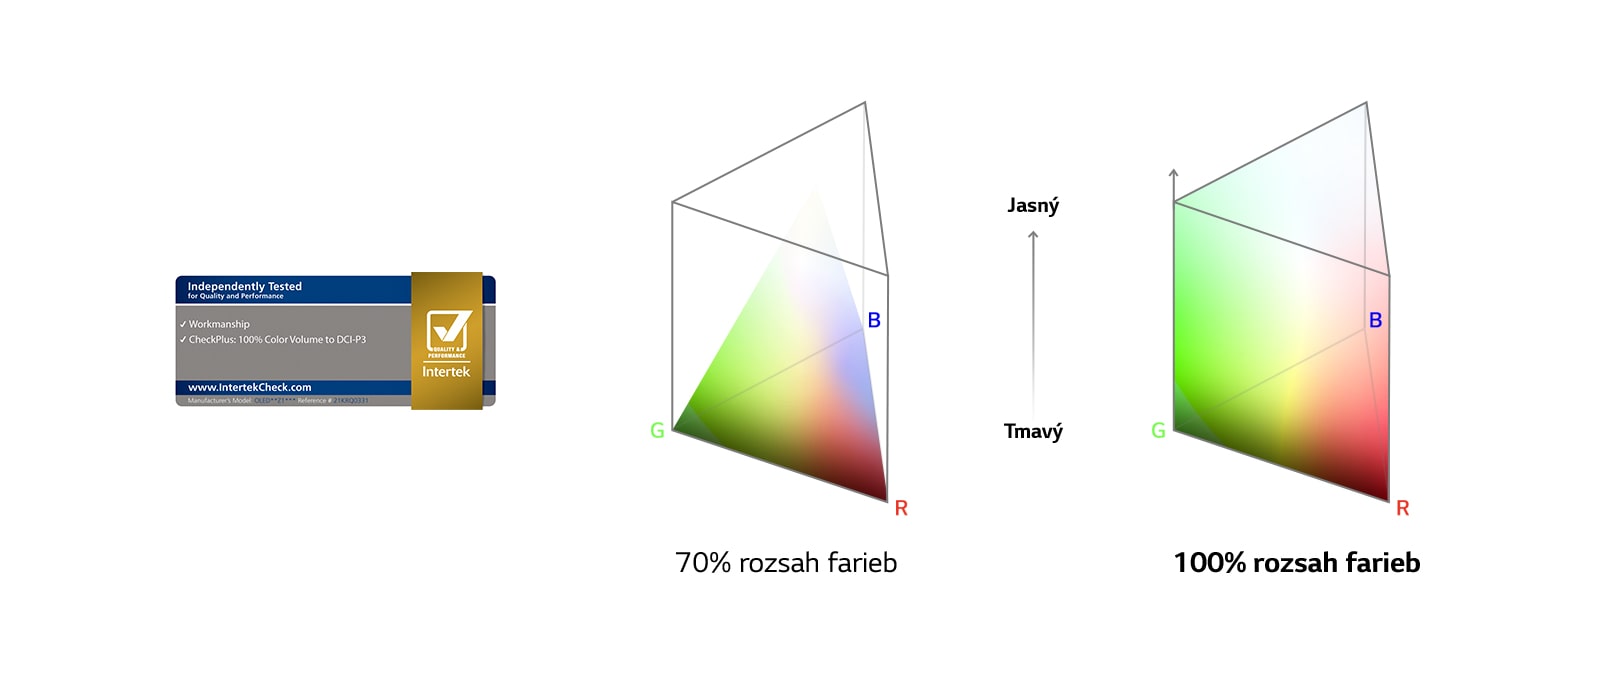 Logo 100% rozsah farieb certifikovaný spoločnosťou Intertek. Porovnávací graf medzi 70% farebného rozsahu a 100% farebného rozsahu.